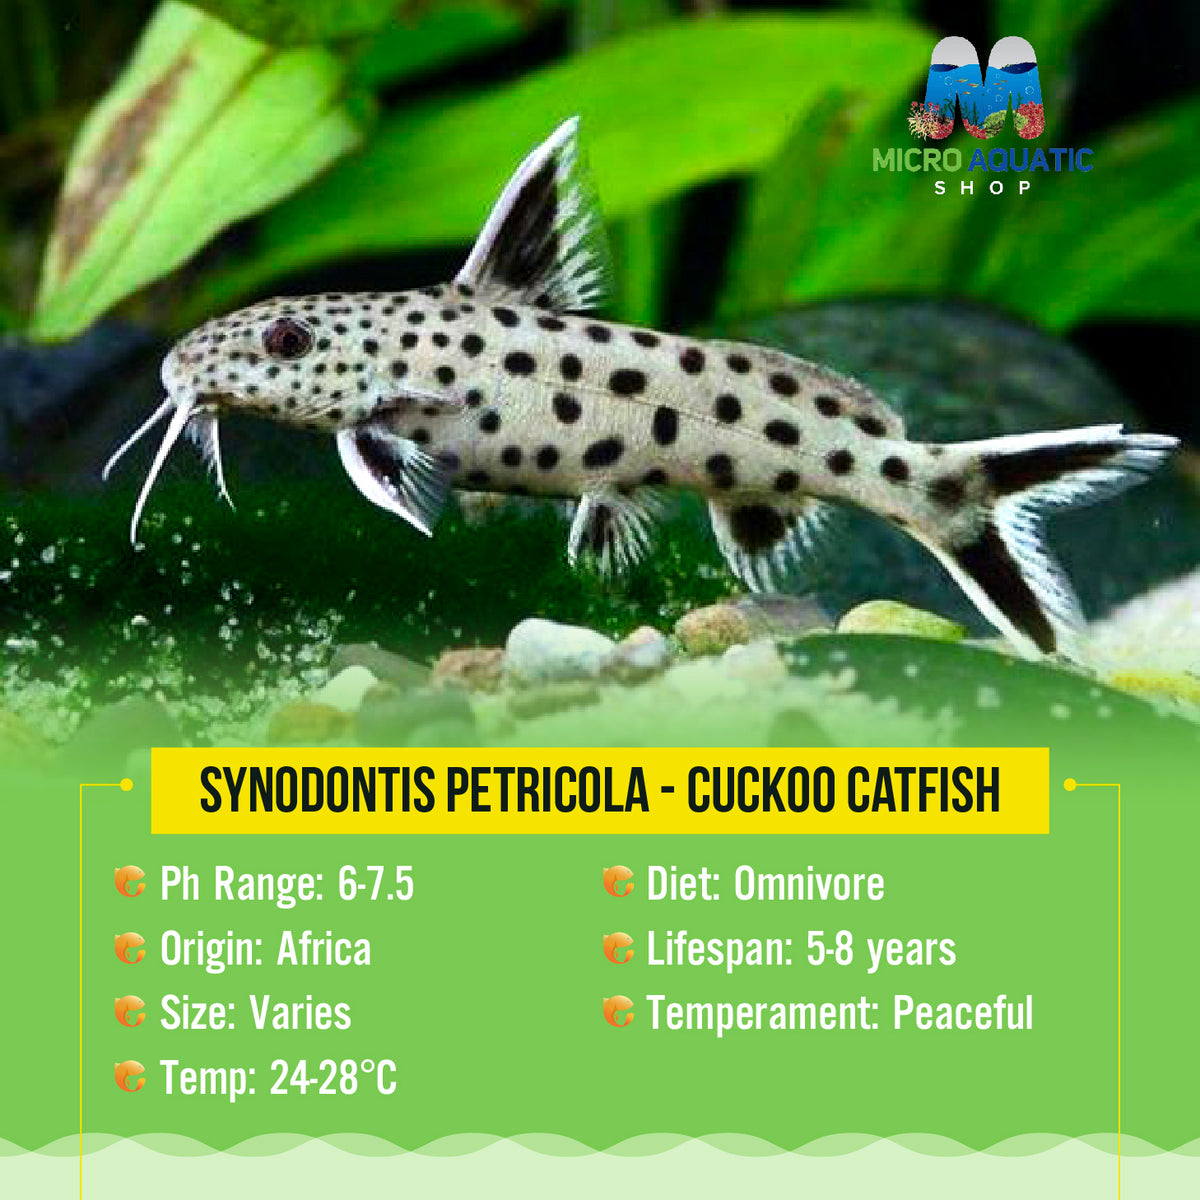 Synodontis petricola - Cuckoo Catfish